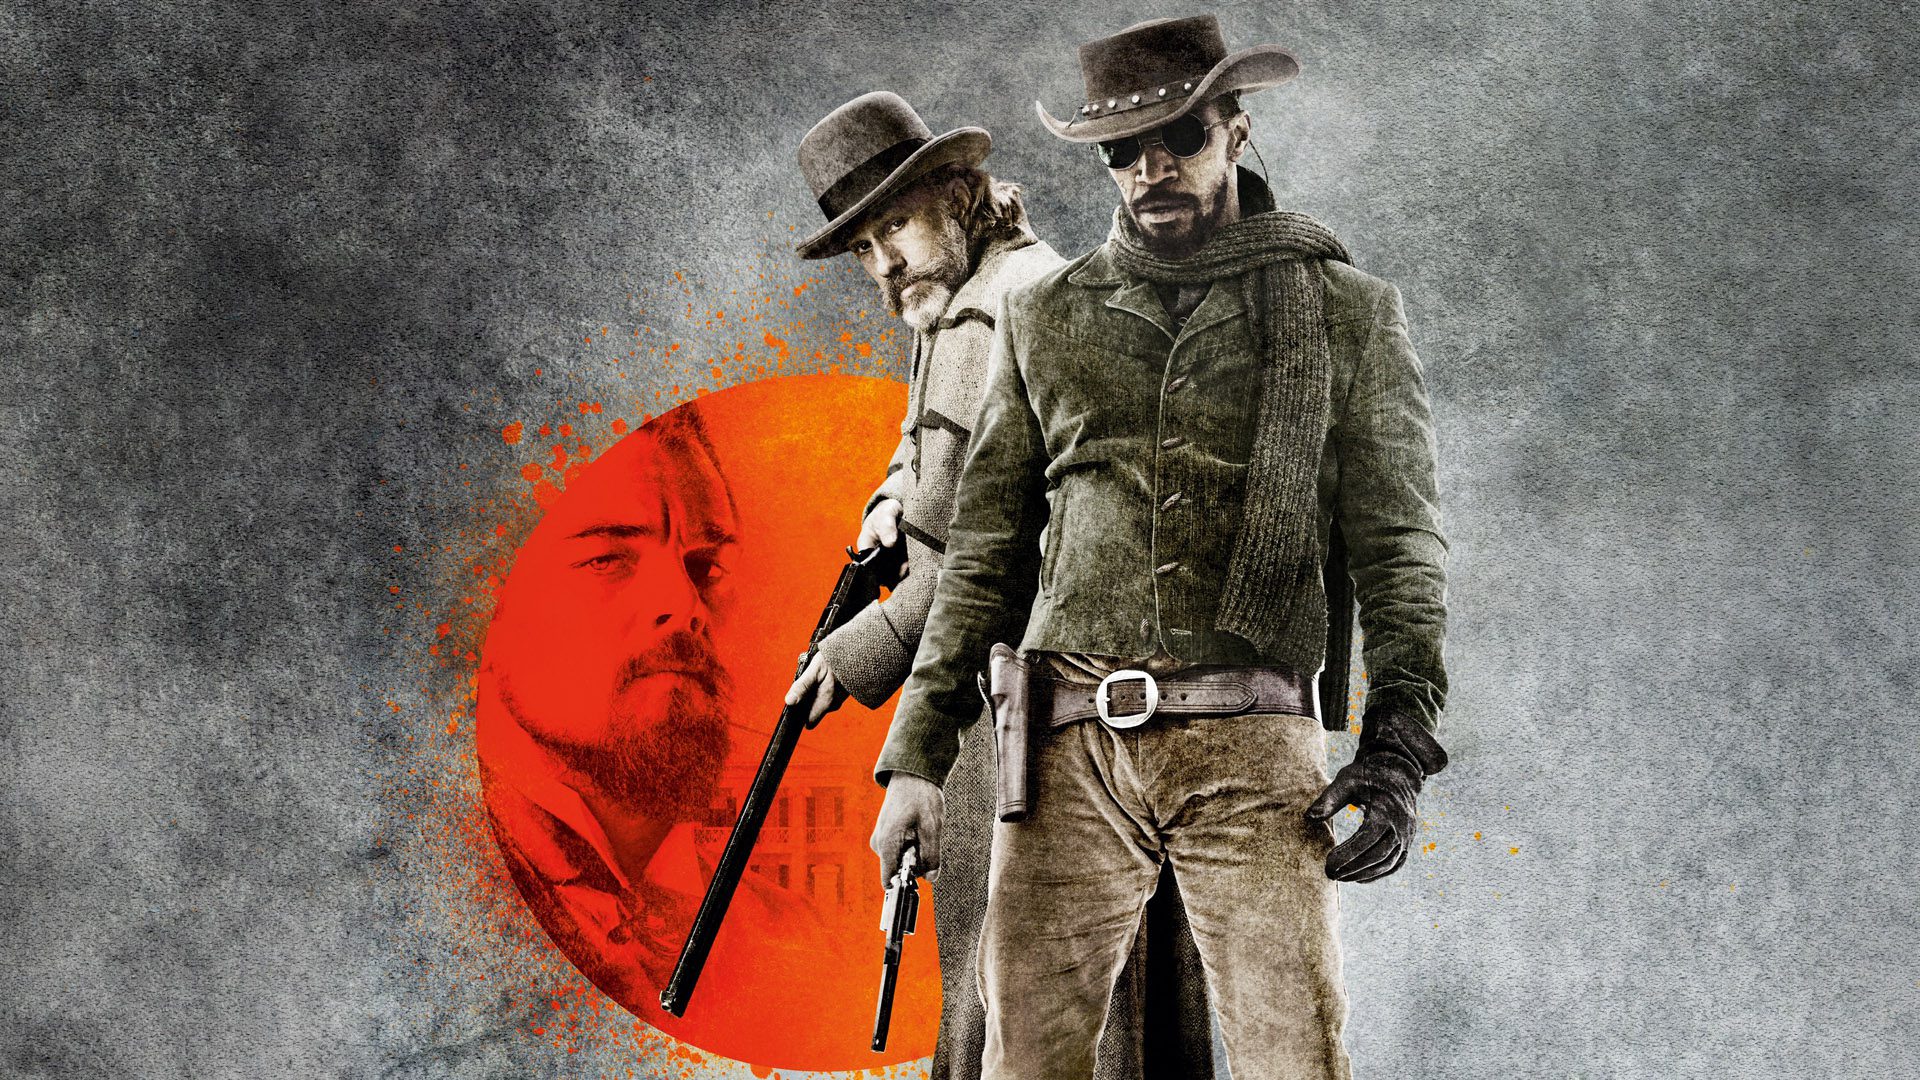 Ecco la trama e la recensione di Django Unchained, film scritto e diretto da Quentin Tarantino